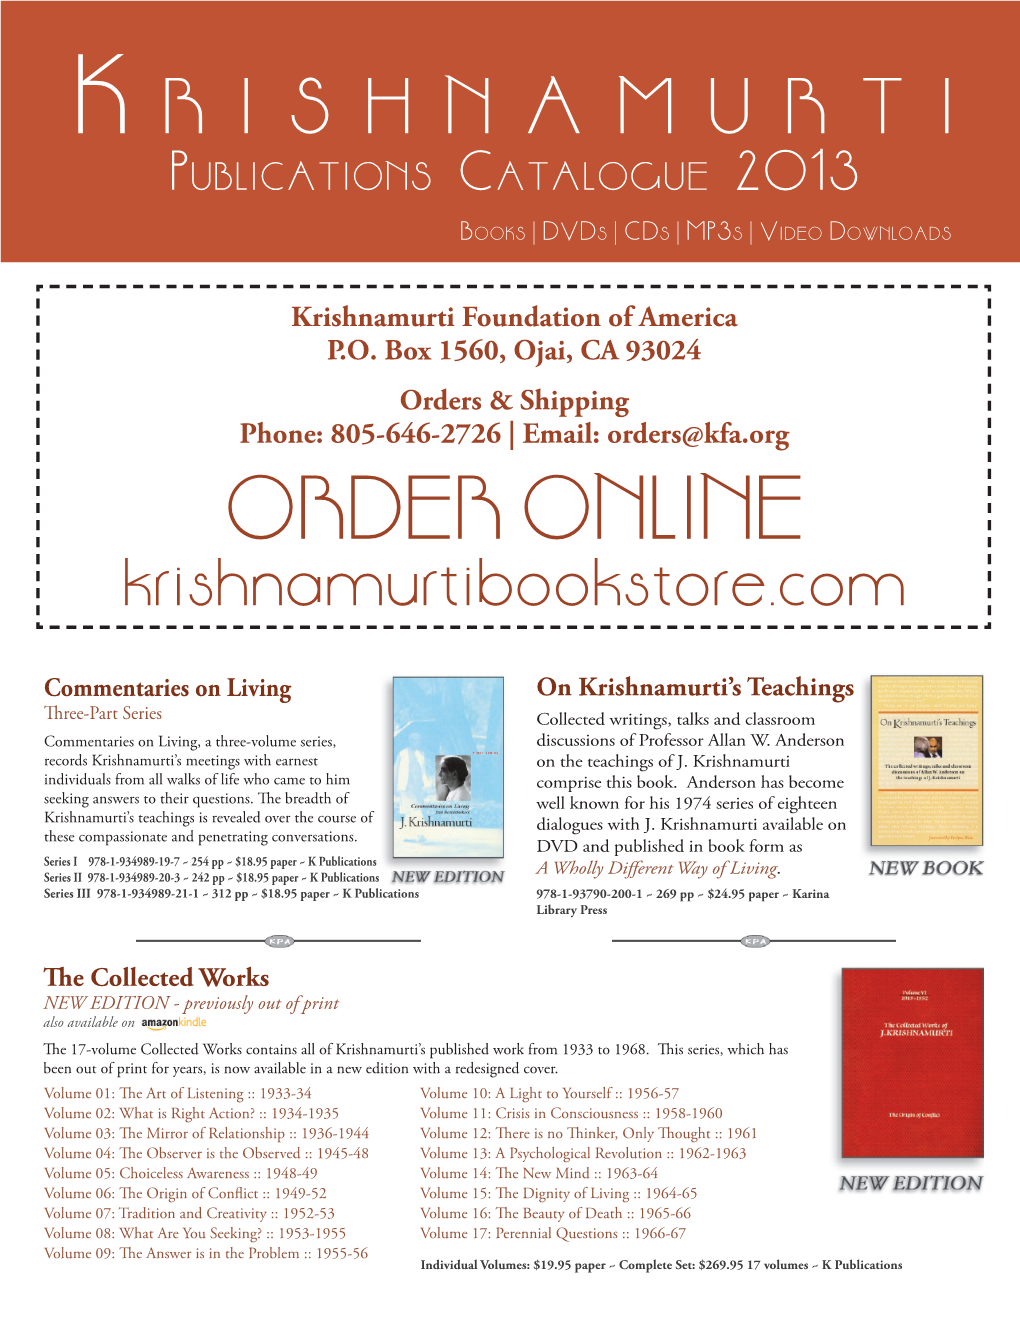 KFA Publications Catalogue S